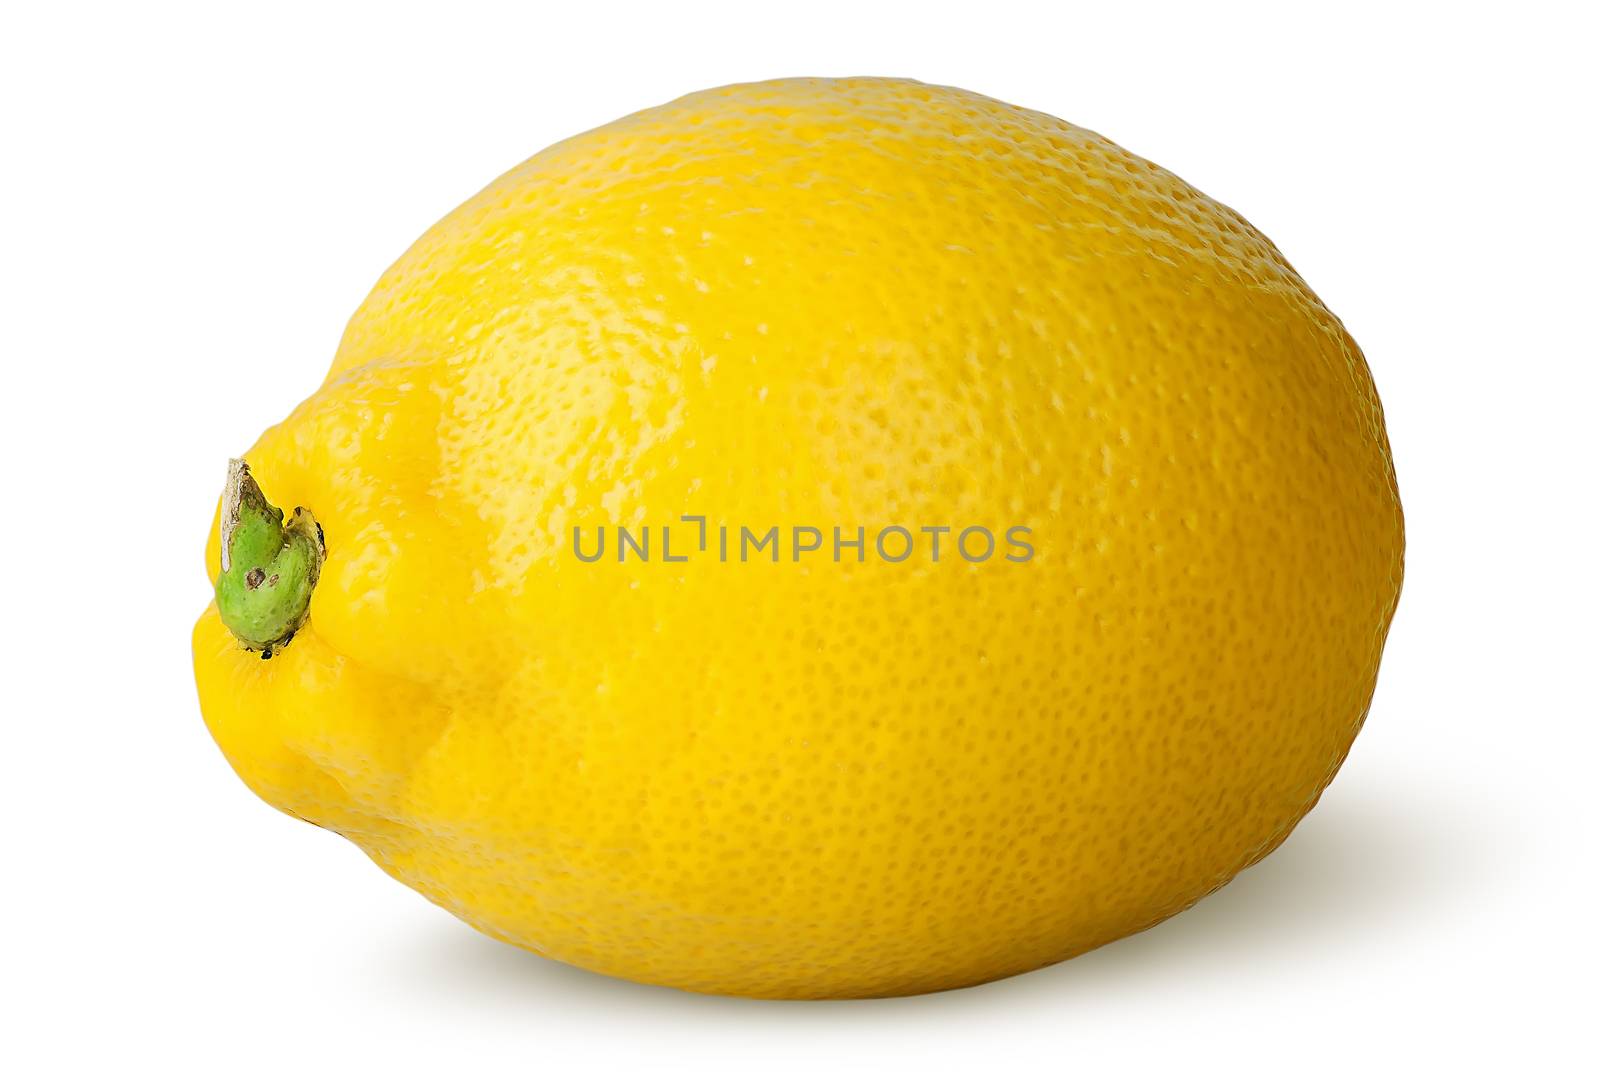 Ripe refreshing lemon turned by Cipariss